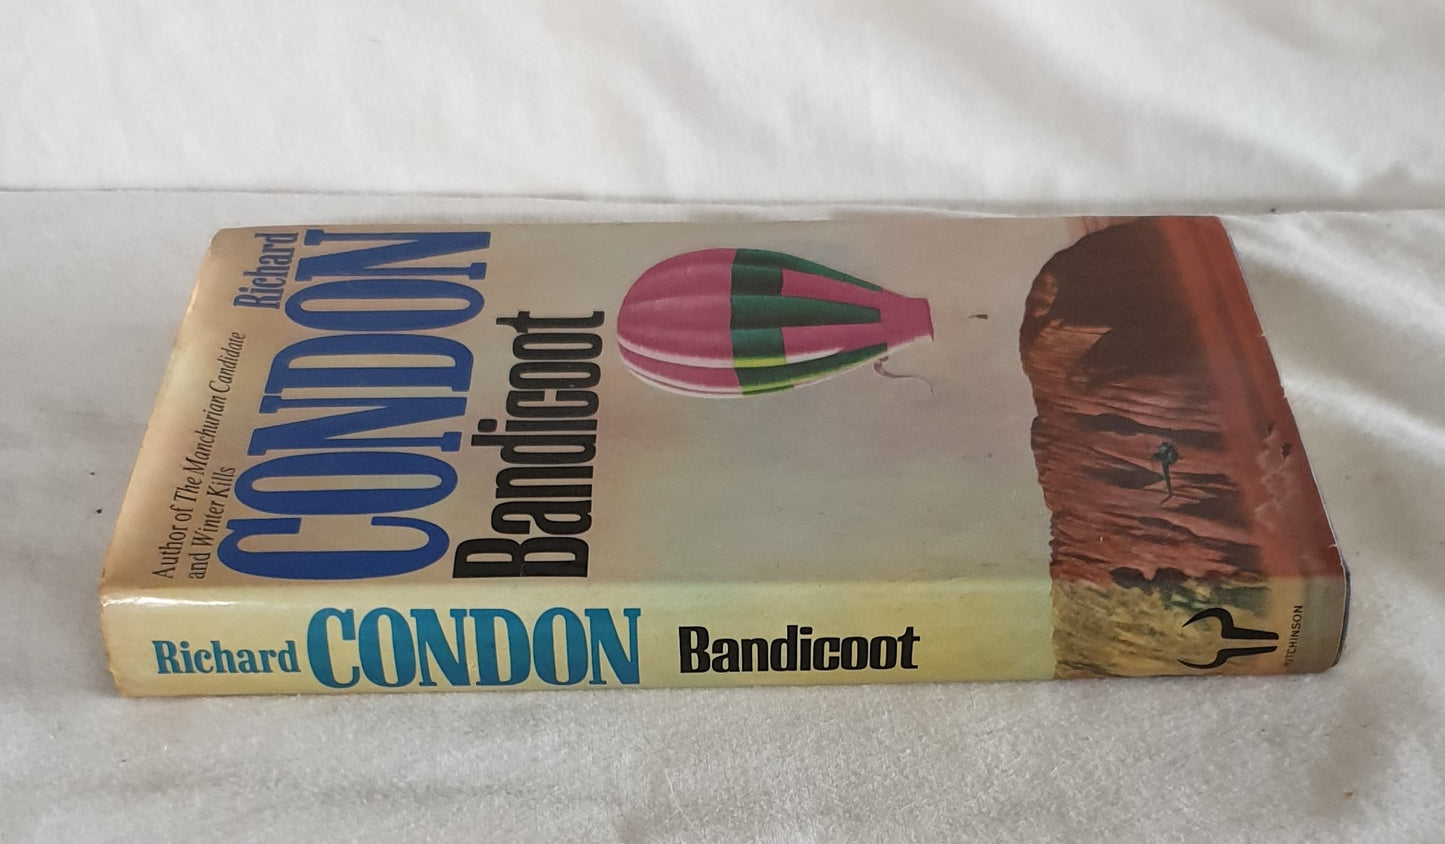 Bandicoot by Richard Condon